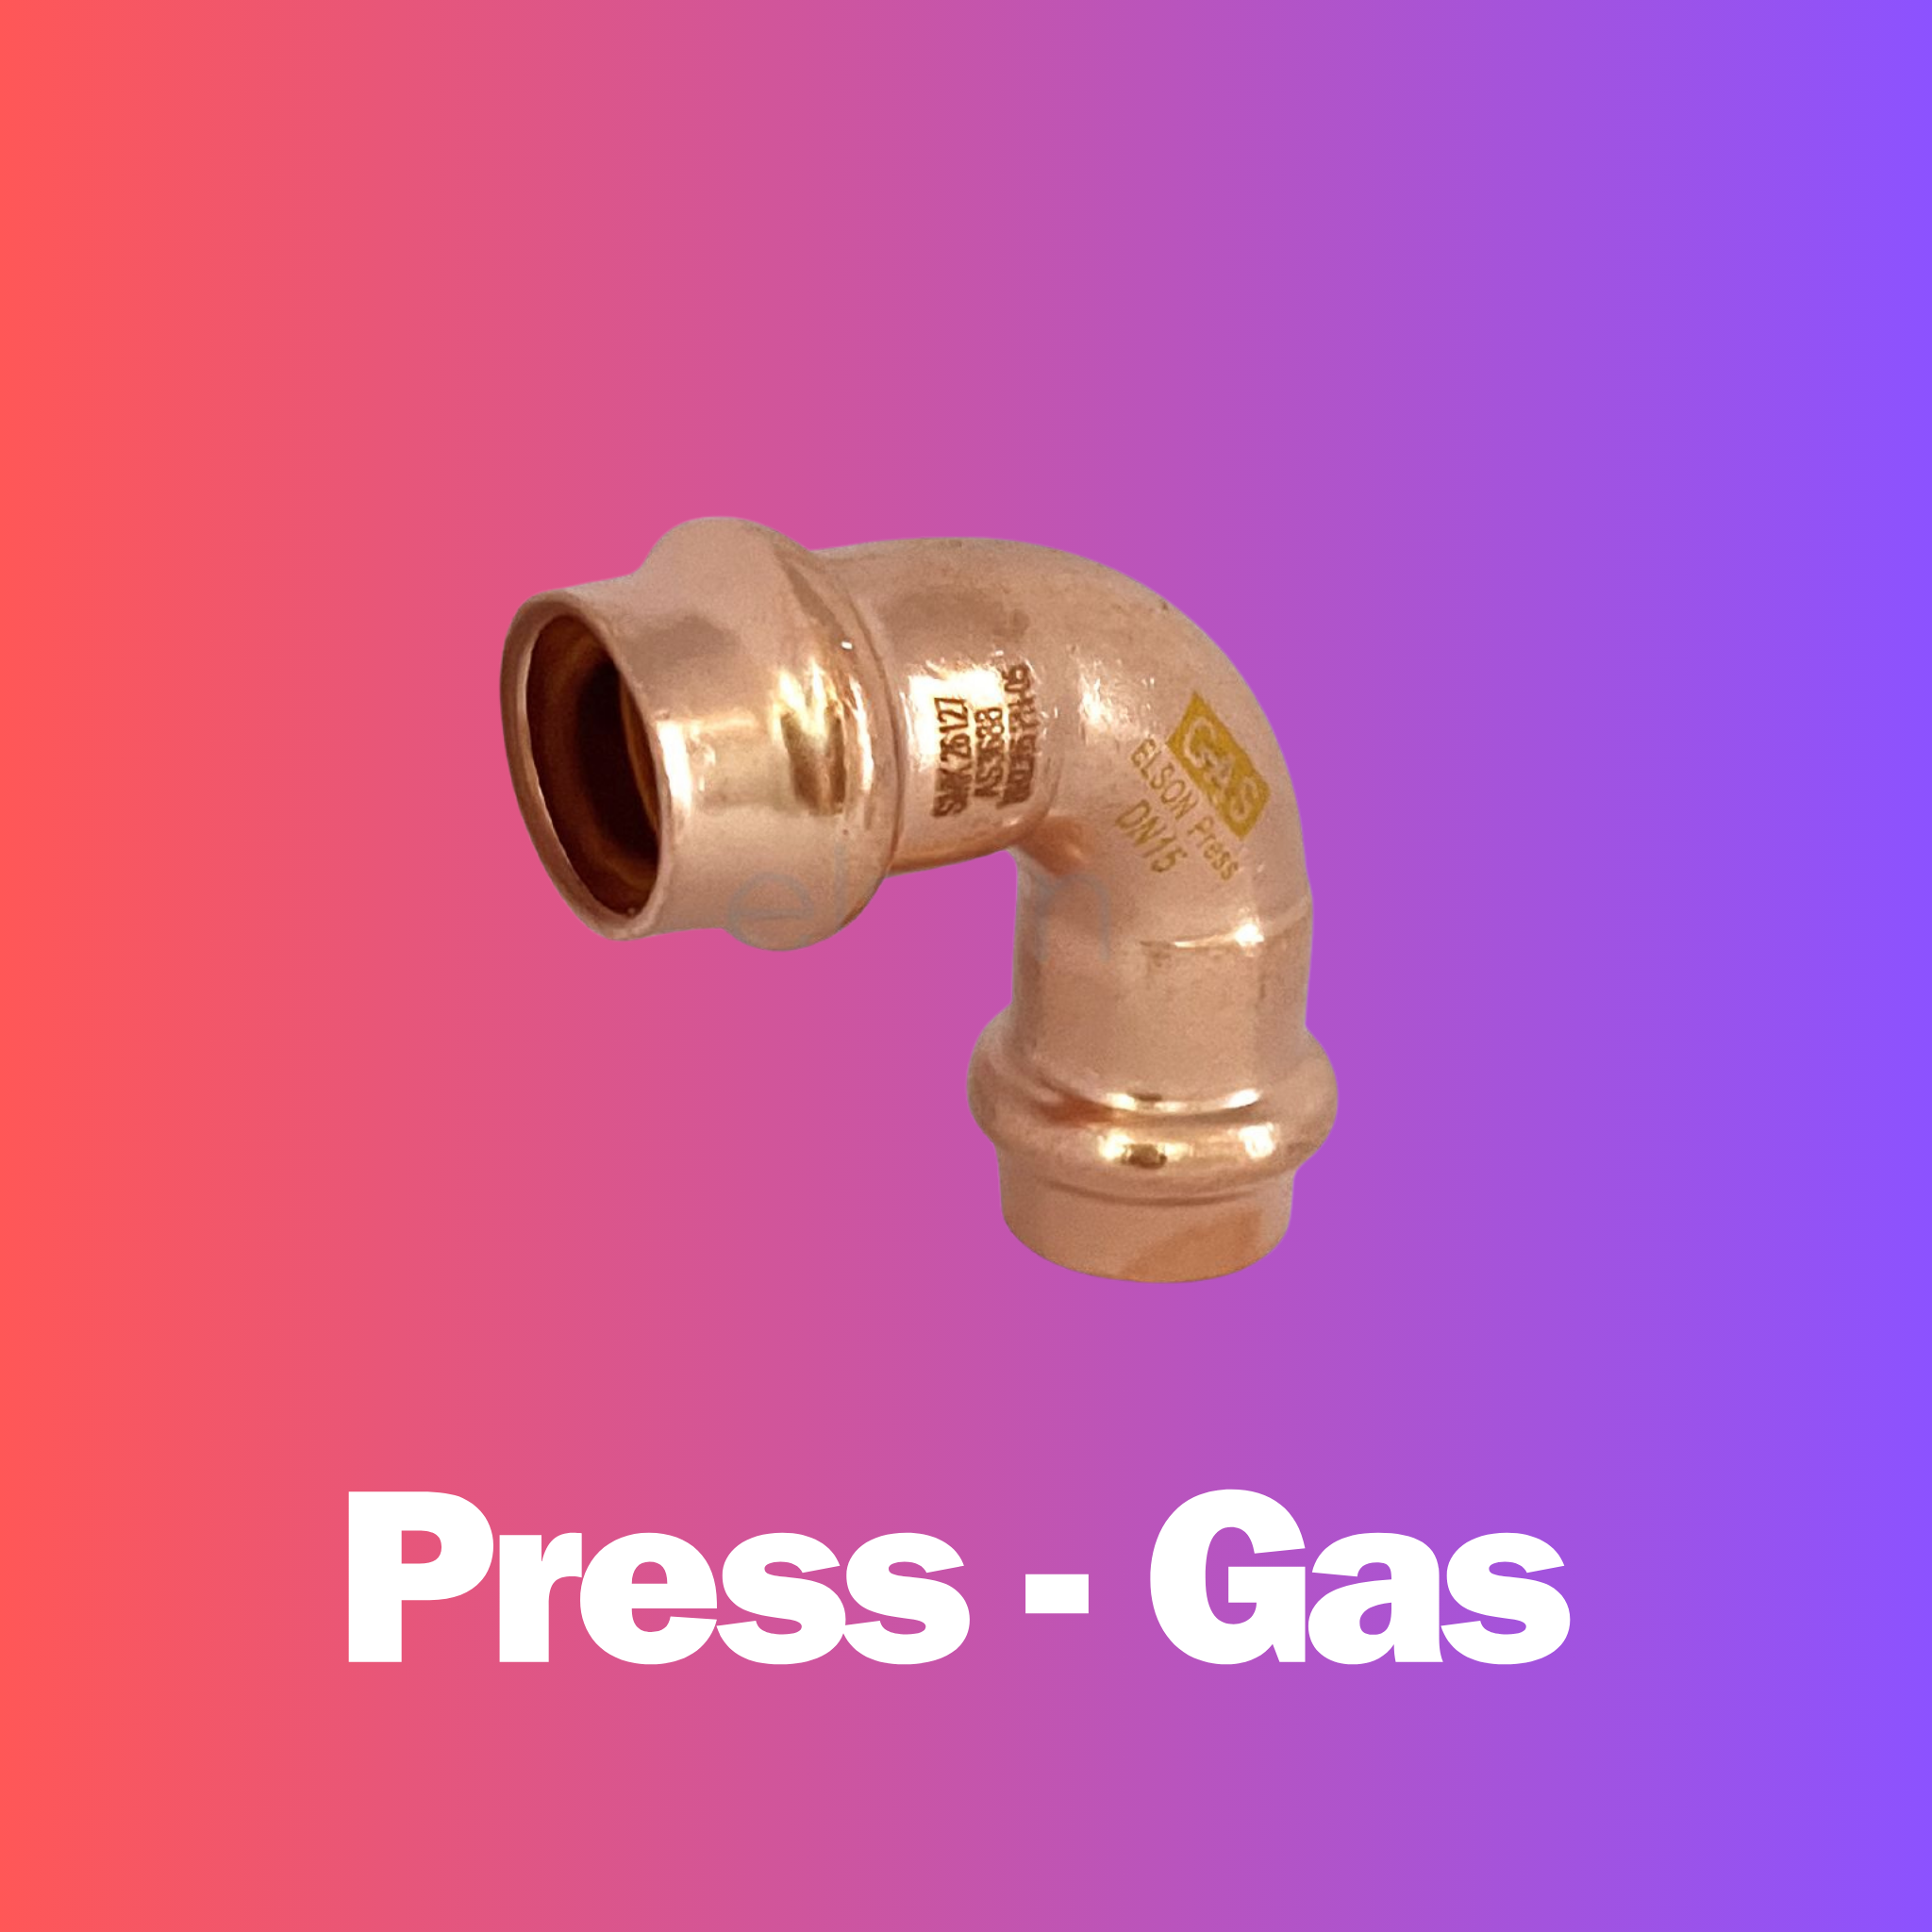 Press - Gas